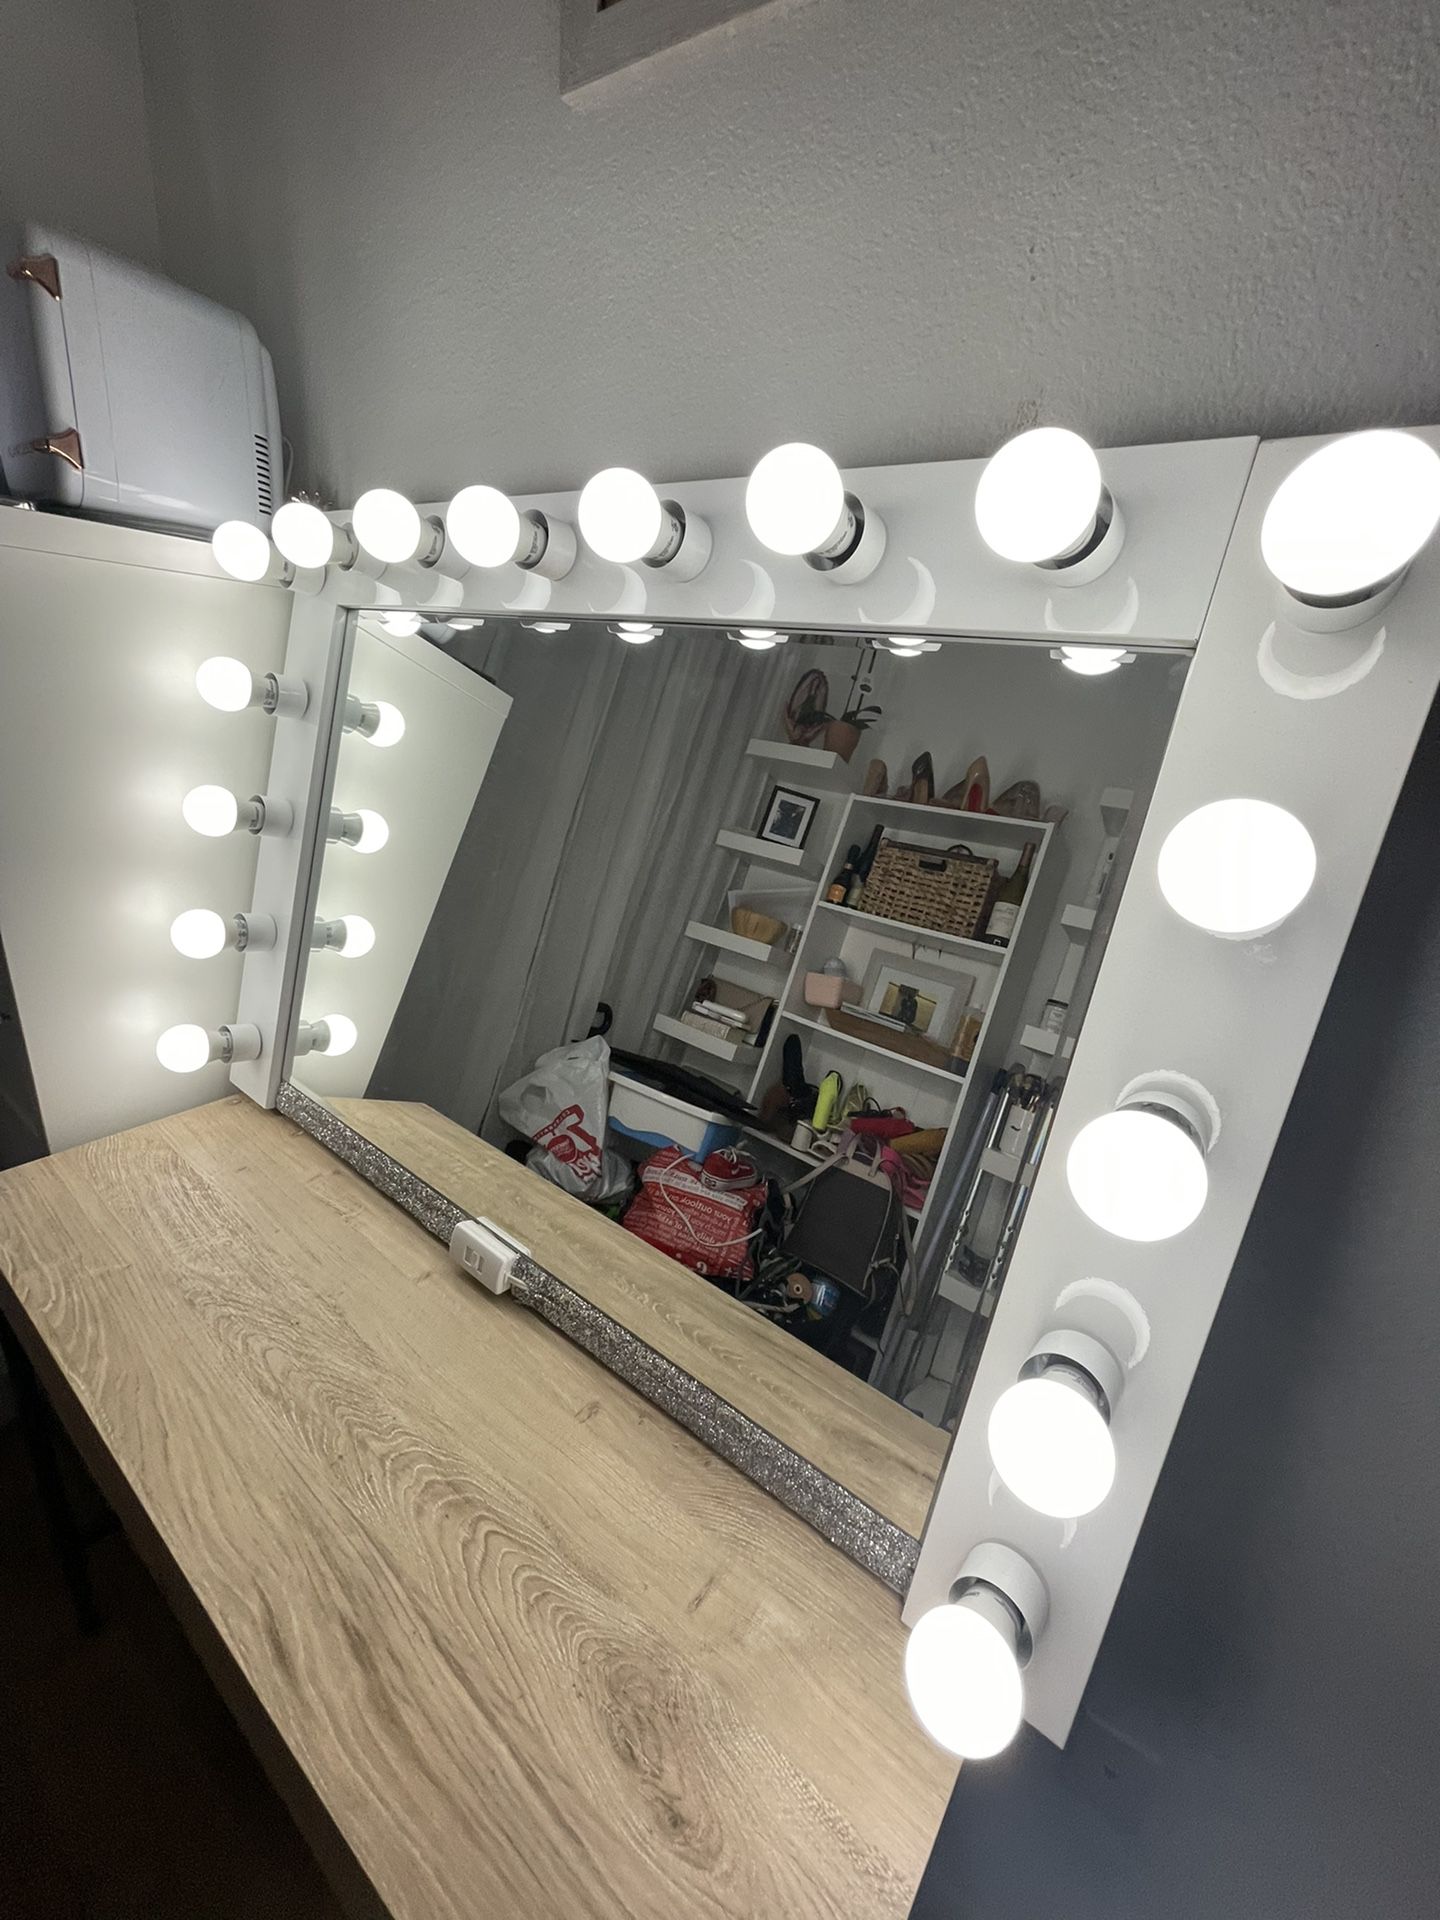 Makeup Vanity Mirror 